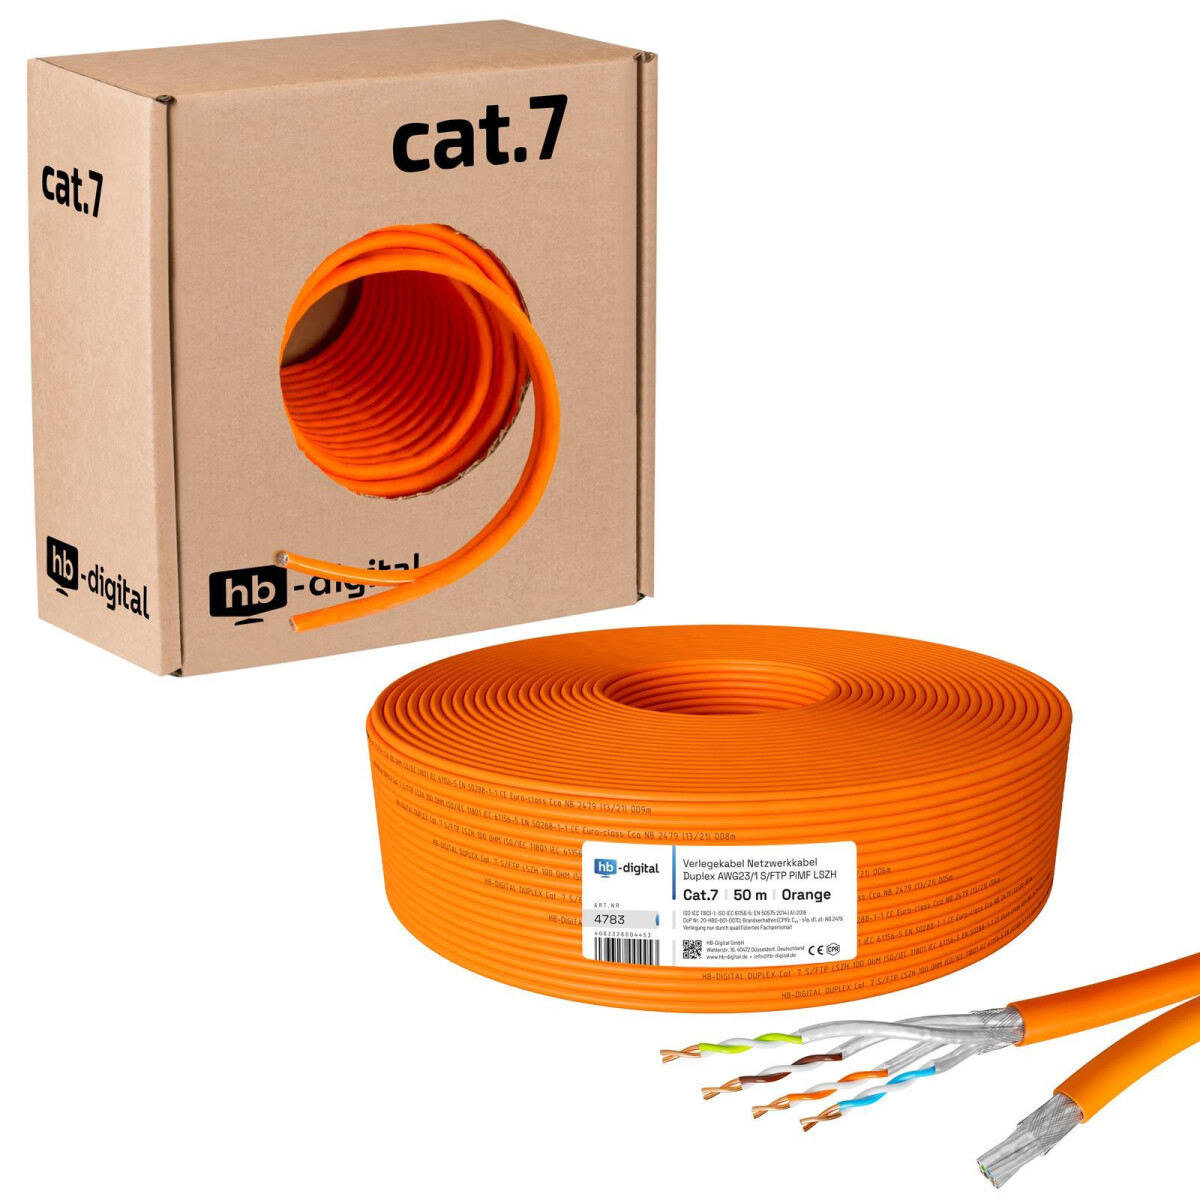  Cable Ethernet Cat 7 de 100 pies para exteriores e interiores,  cable de red de Internet largo de alta velocidad plano de 10 Gbps 600 Mhz,  cable LAN RJ45 Cat7 blindado